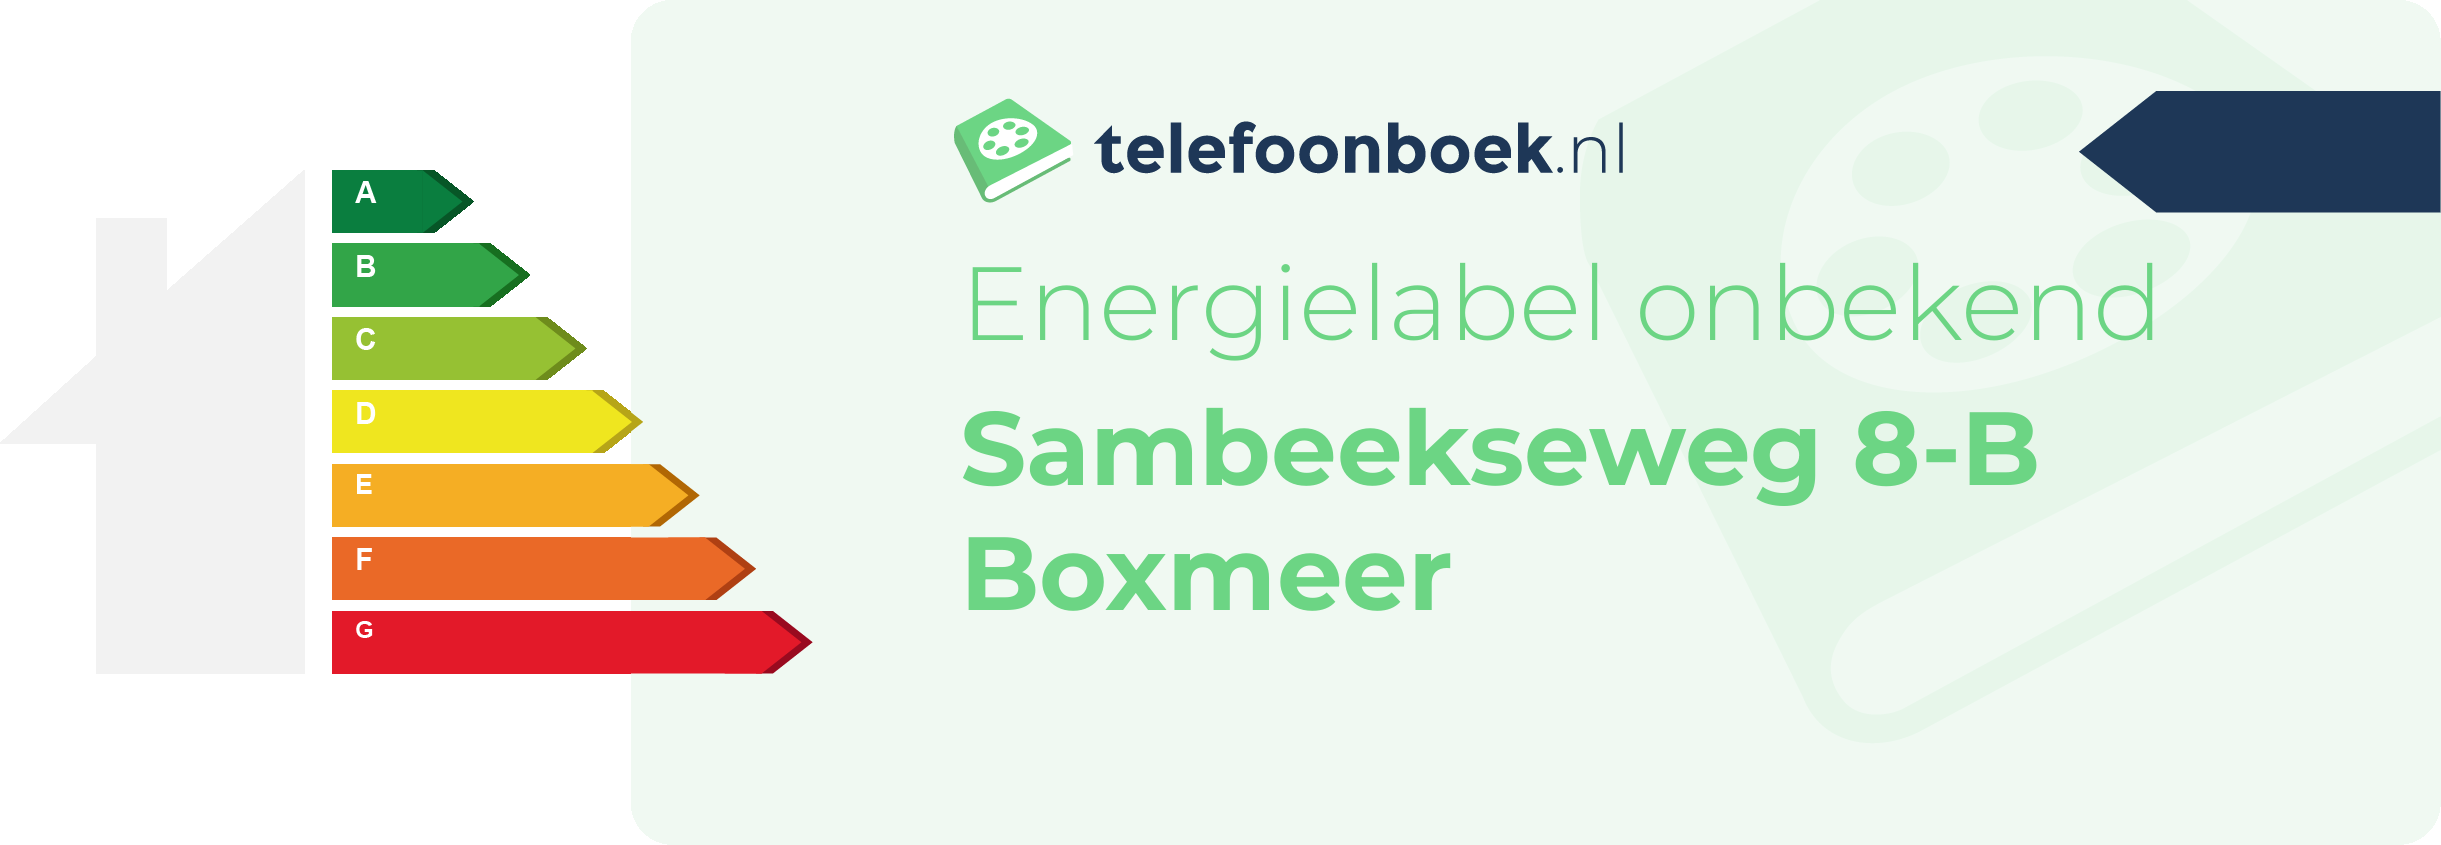 Energielabel Sambeekseweg 8-B Boxmeer